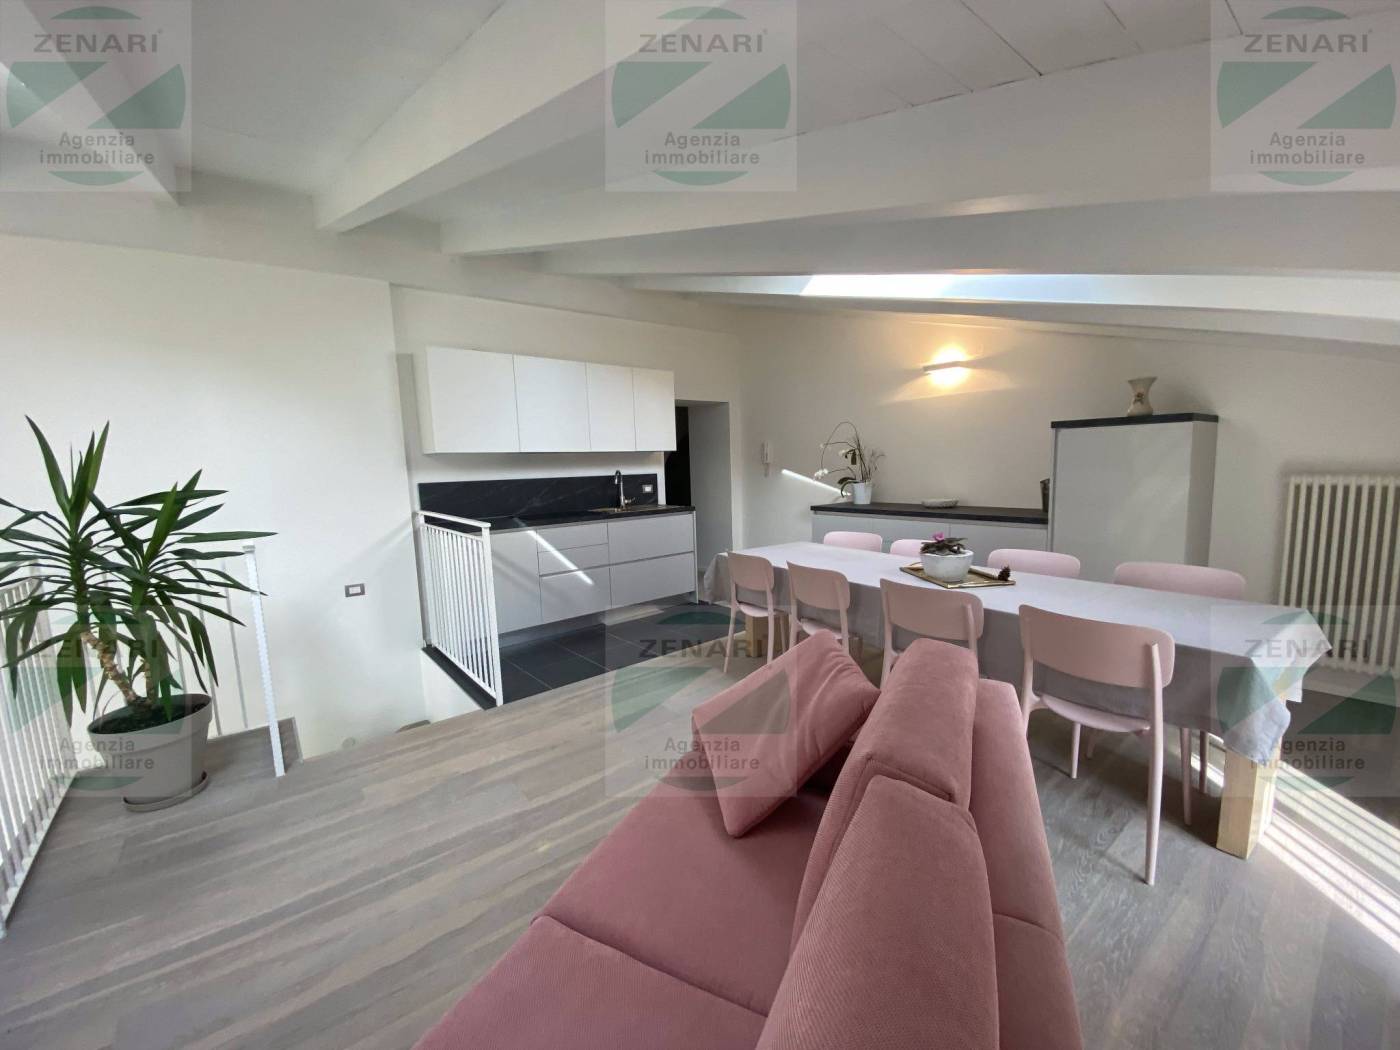 A Trento, località Sopramonte, in posizione soleggiata vendiamo ampio appartamento su due livelli composto da ingresso, disbrigo, soggiorno-cucina, 